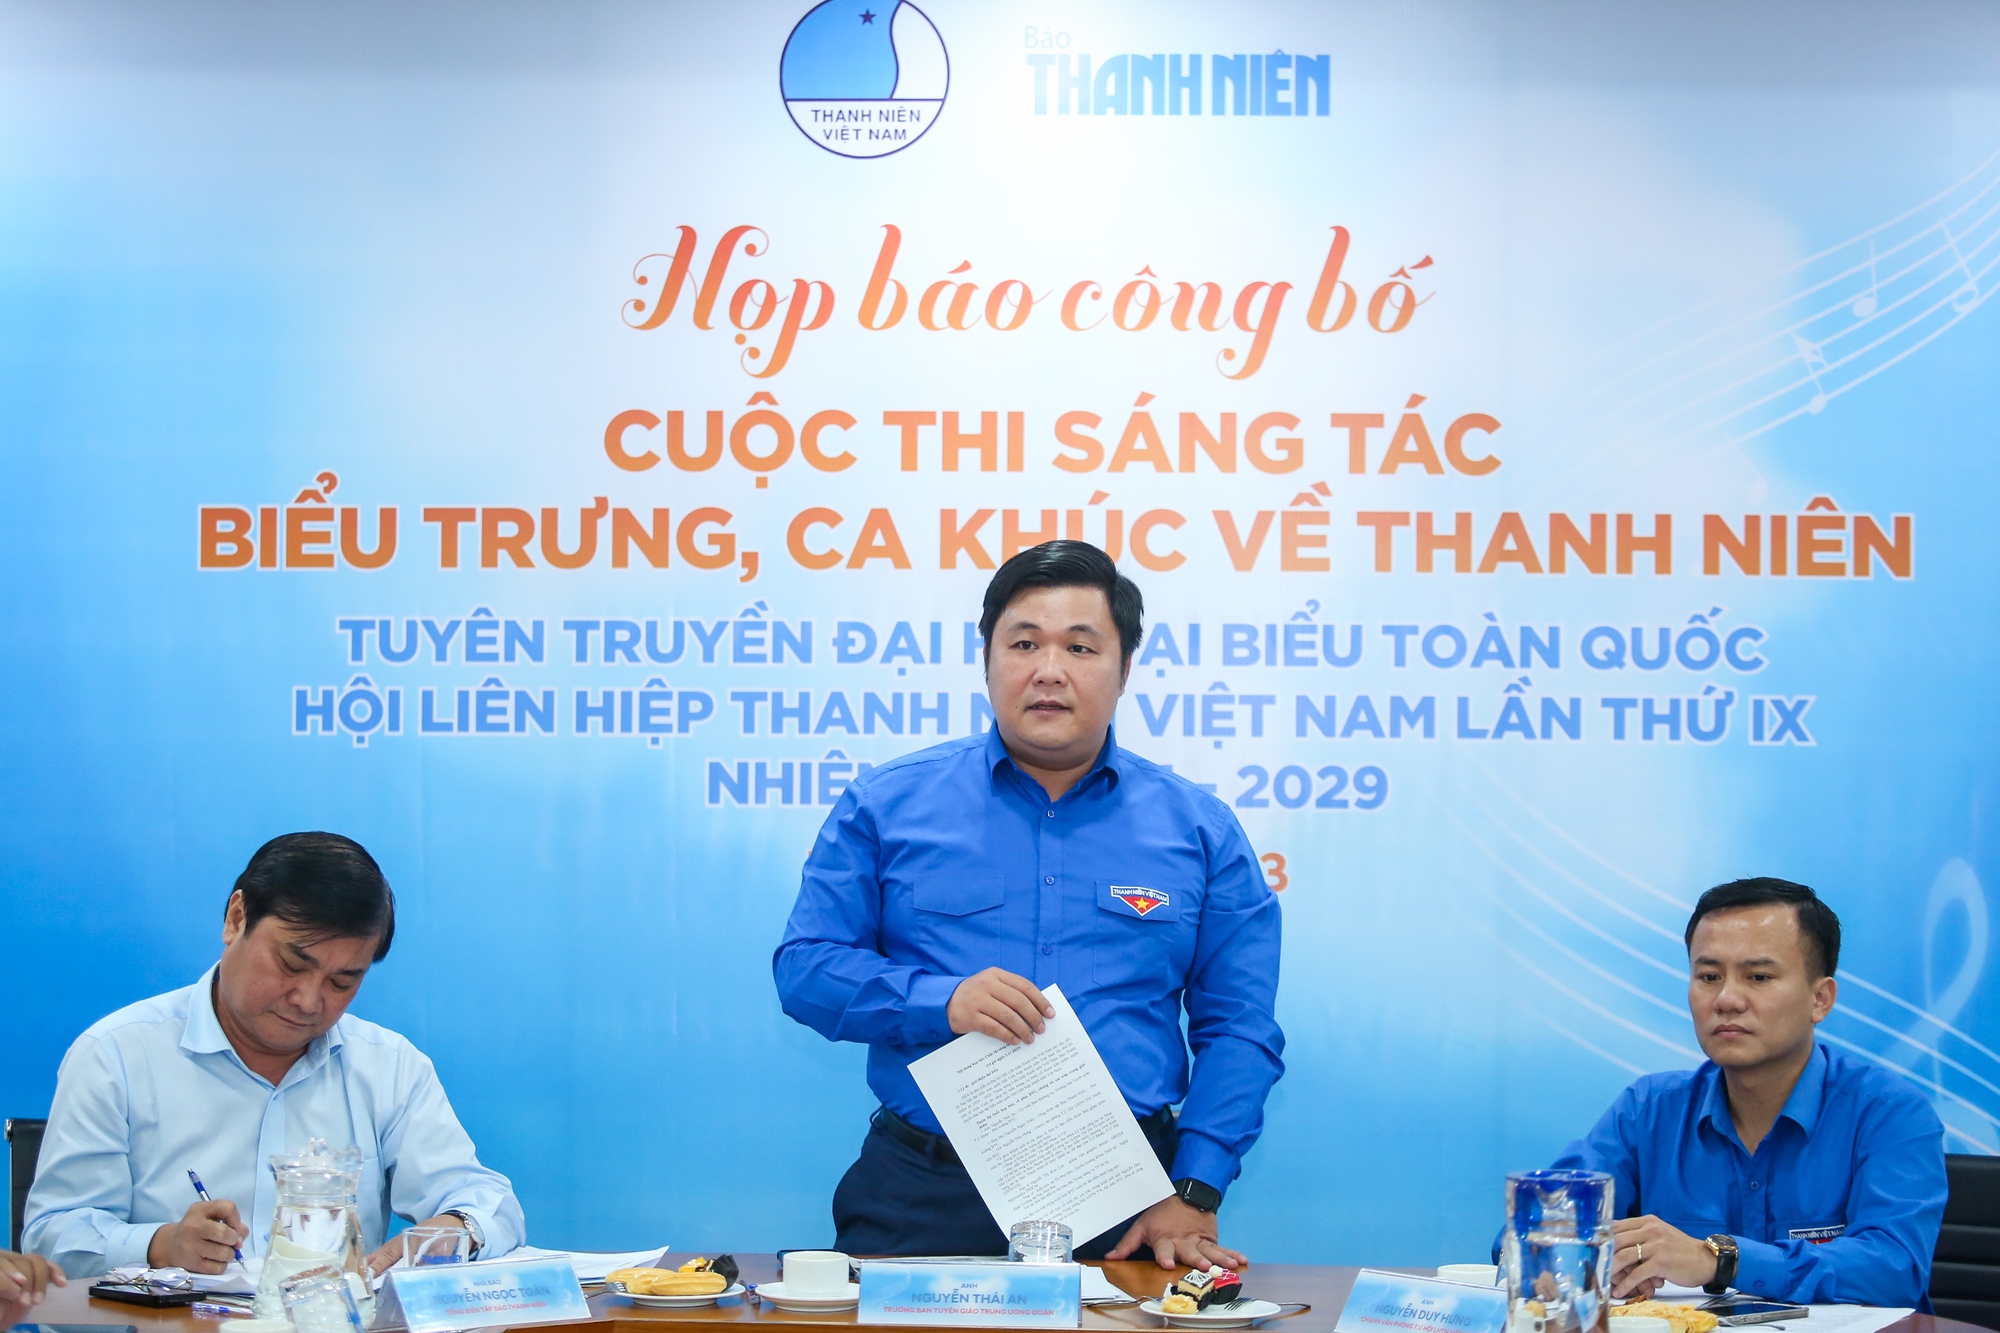 Cuộc thi sáng tác biểu trưng, ca khúc Đại hội Hội Liên hiệp thanh niên Việt Nam - Ảnh 10.